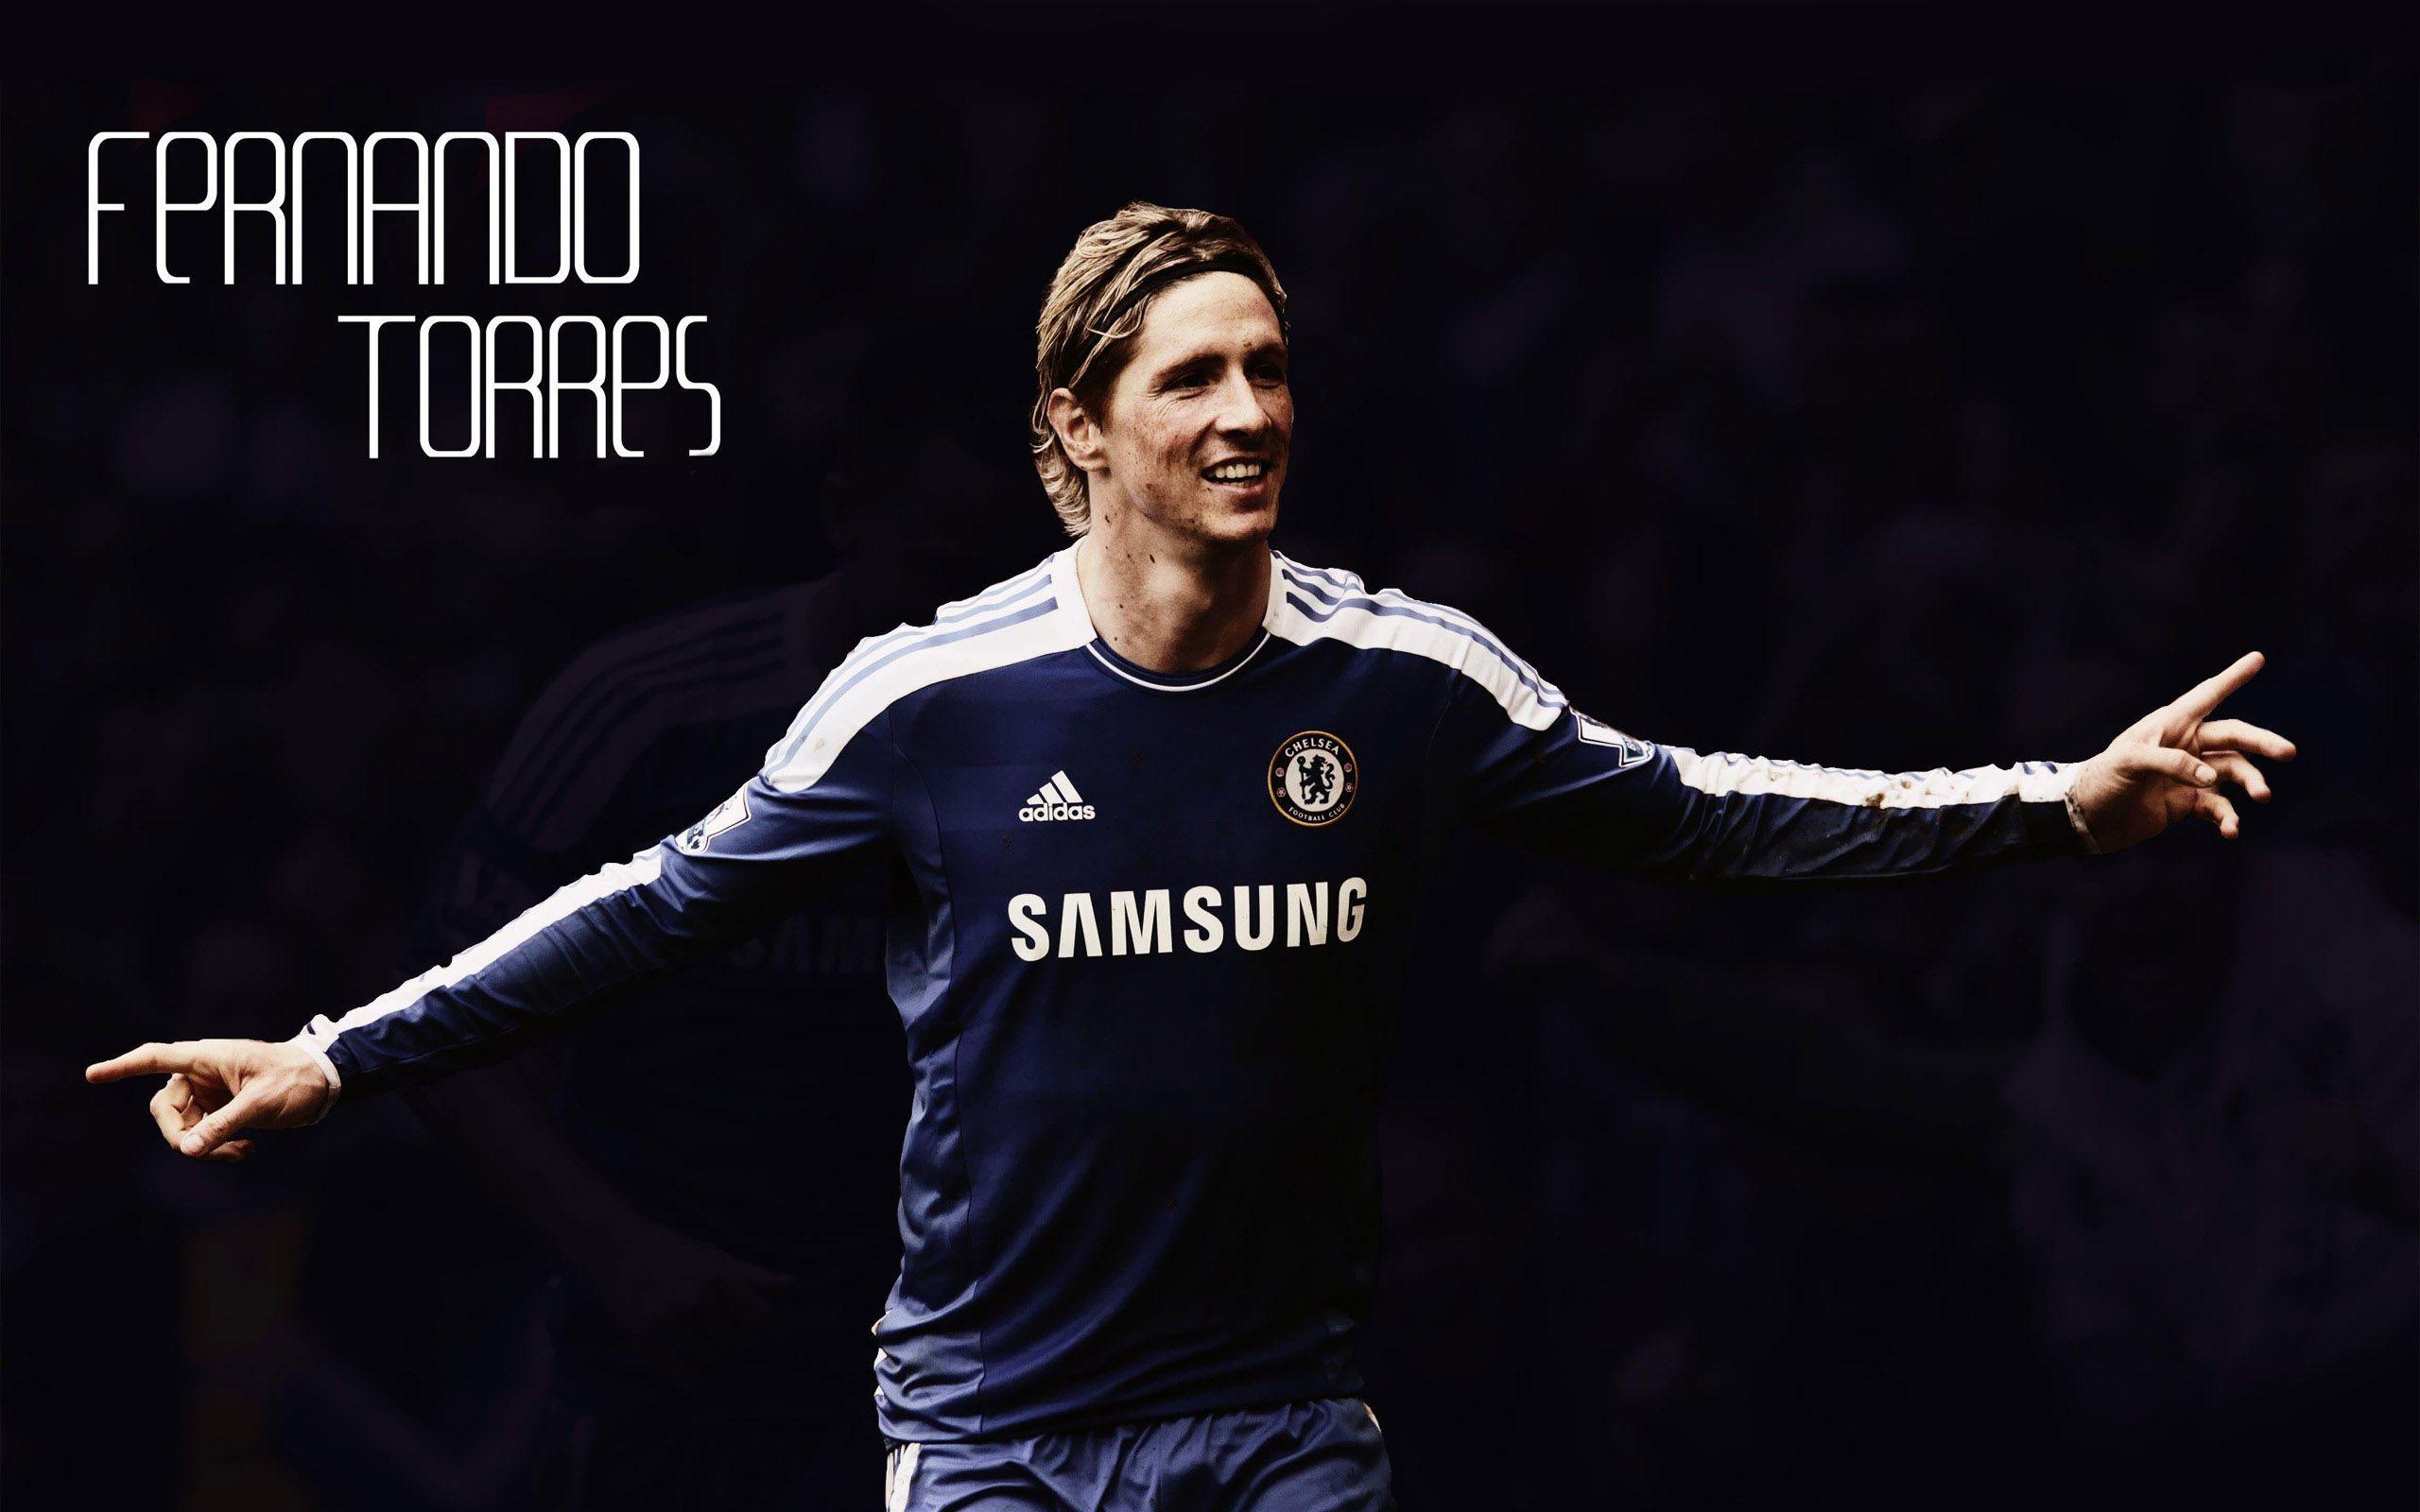 Fernando Torres Chelsea Wallpaper Chelsea Wallpaper HD Free